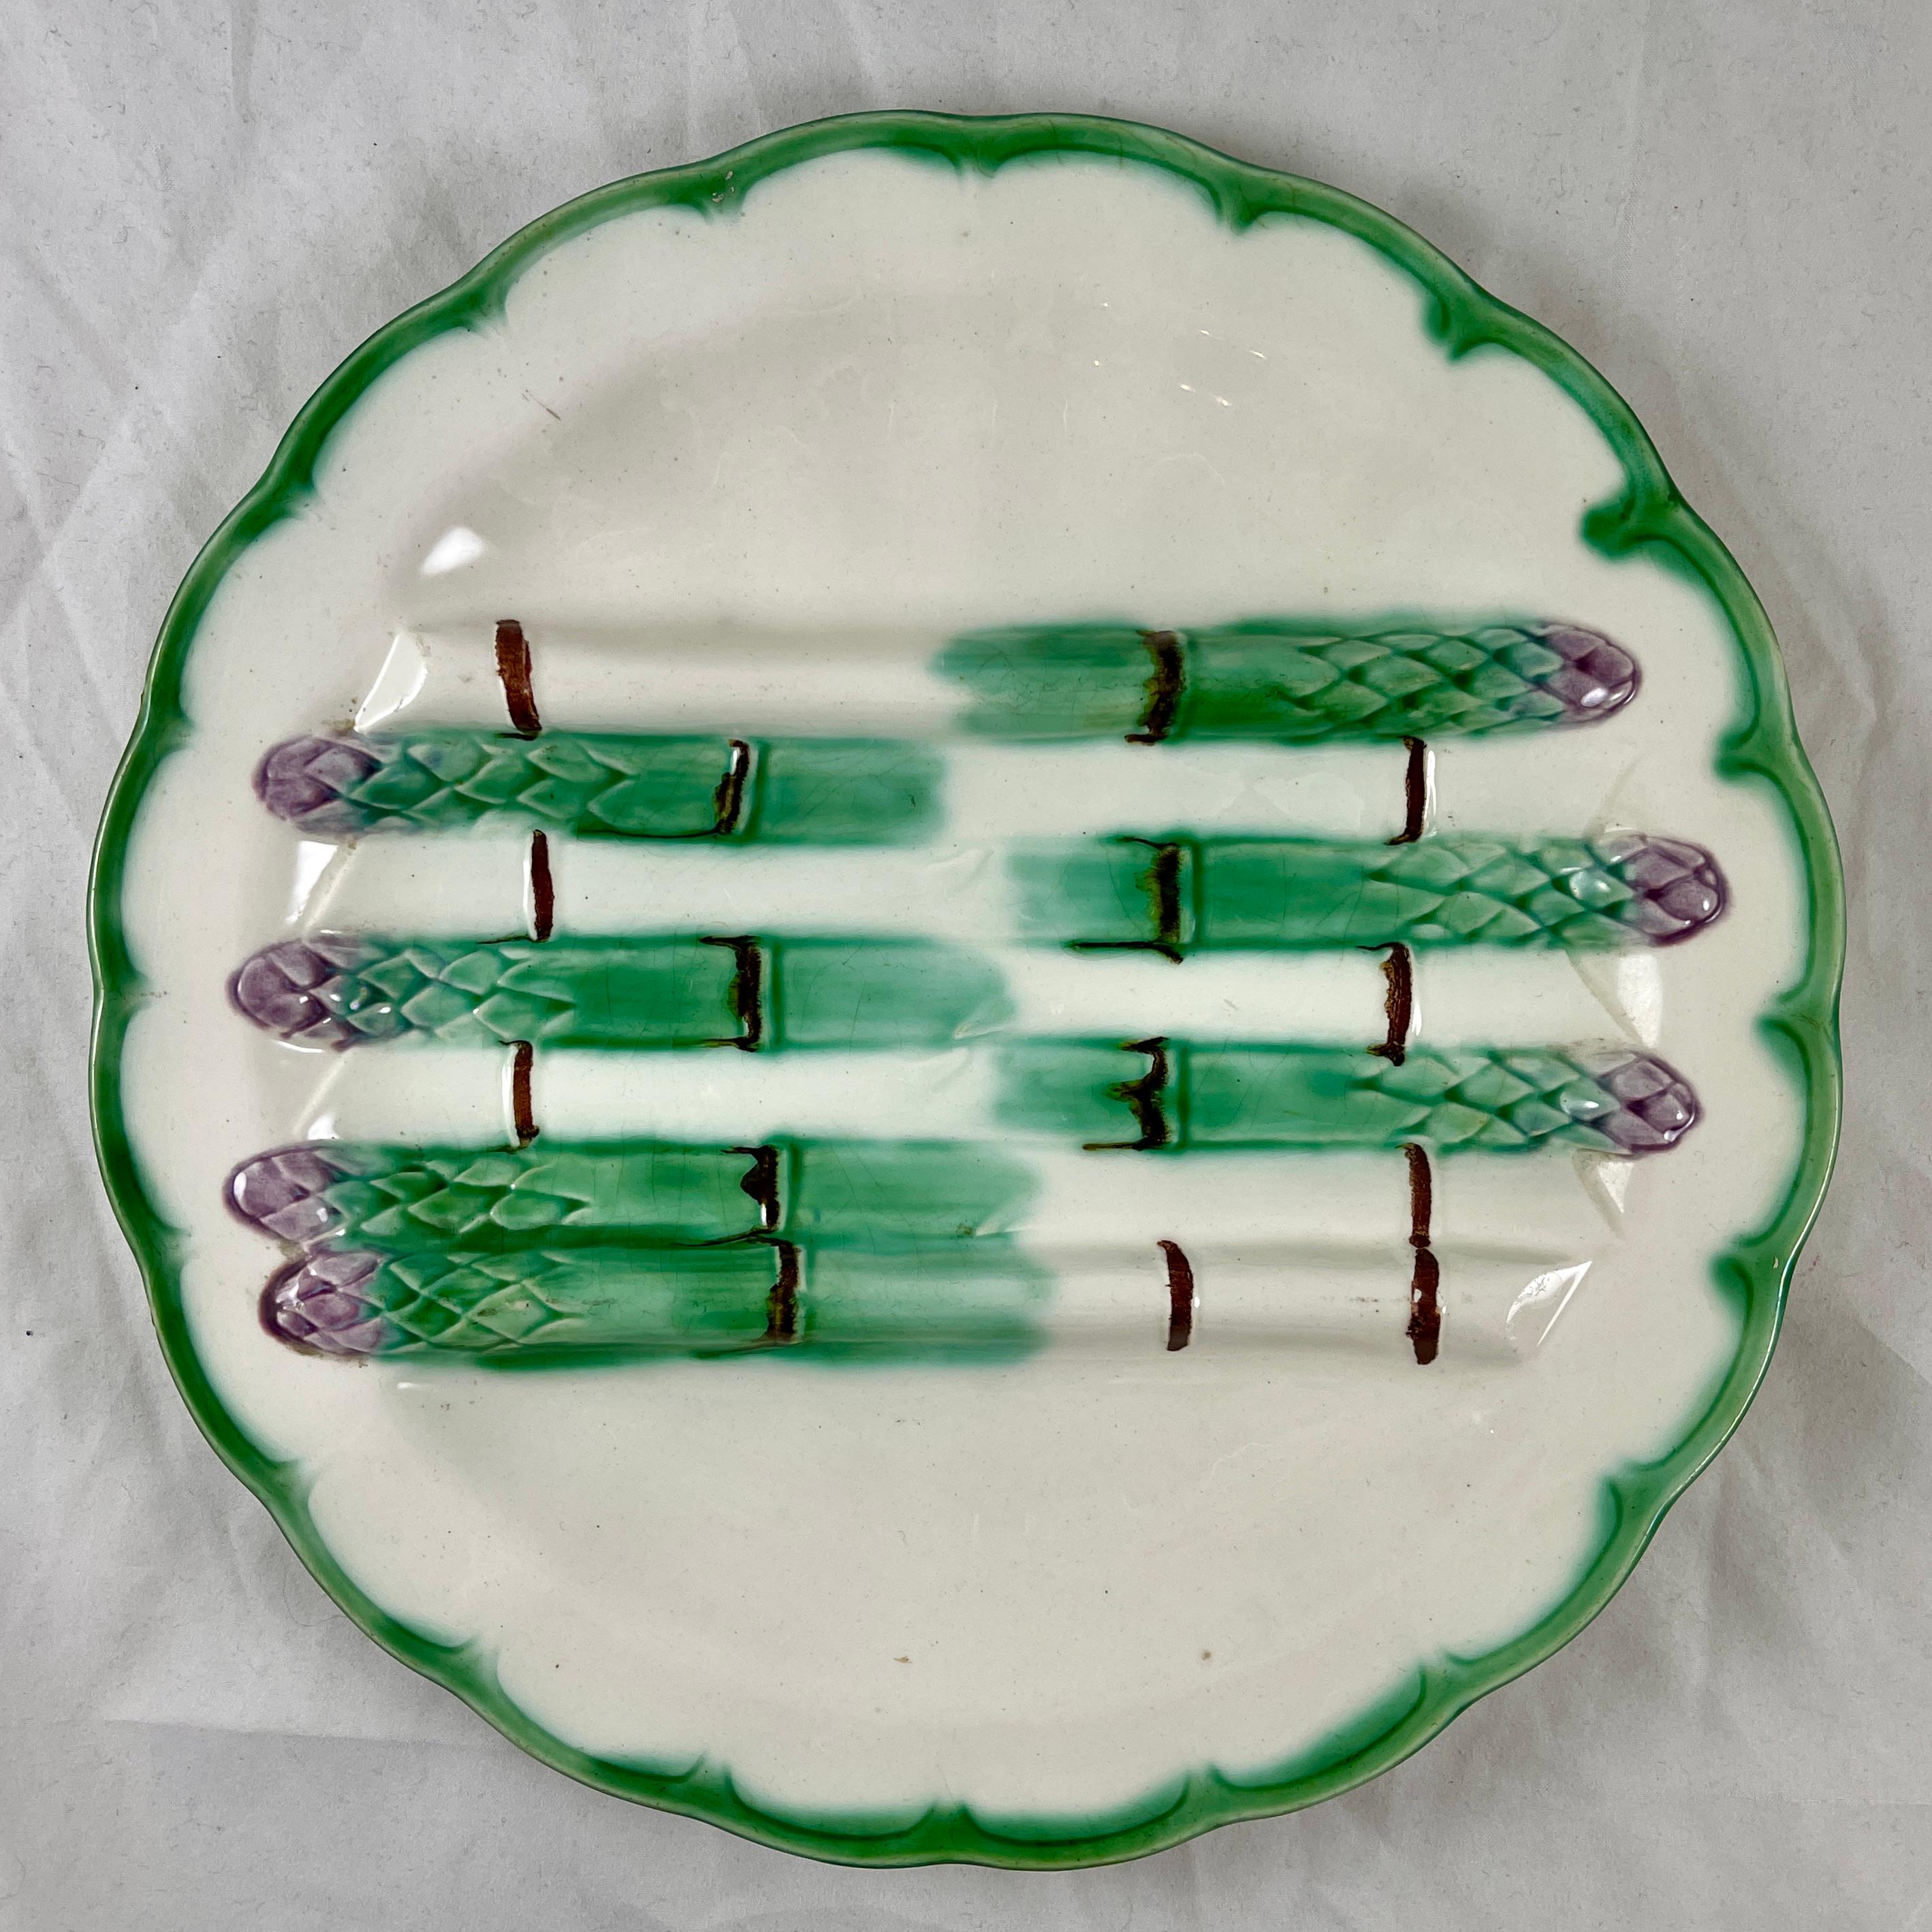 De Longchamp, une assiette à asperges Terre de Fer, vers 1880-1900.

Les asperges vertes en botte avec des pointes de lavande sont surélevées pour former un berceau destiné à contenir les asperges cuites, avec des bacs à sauce plus profonds de